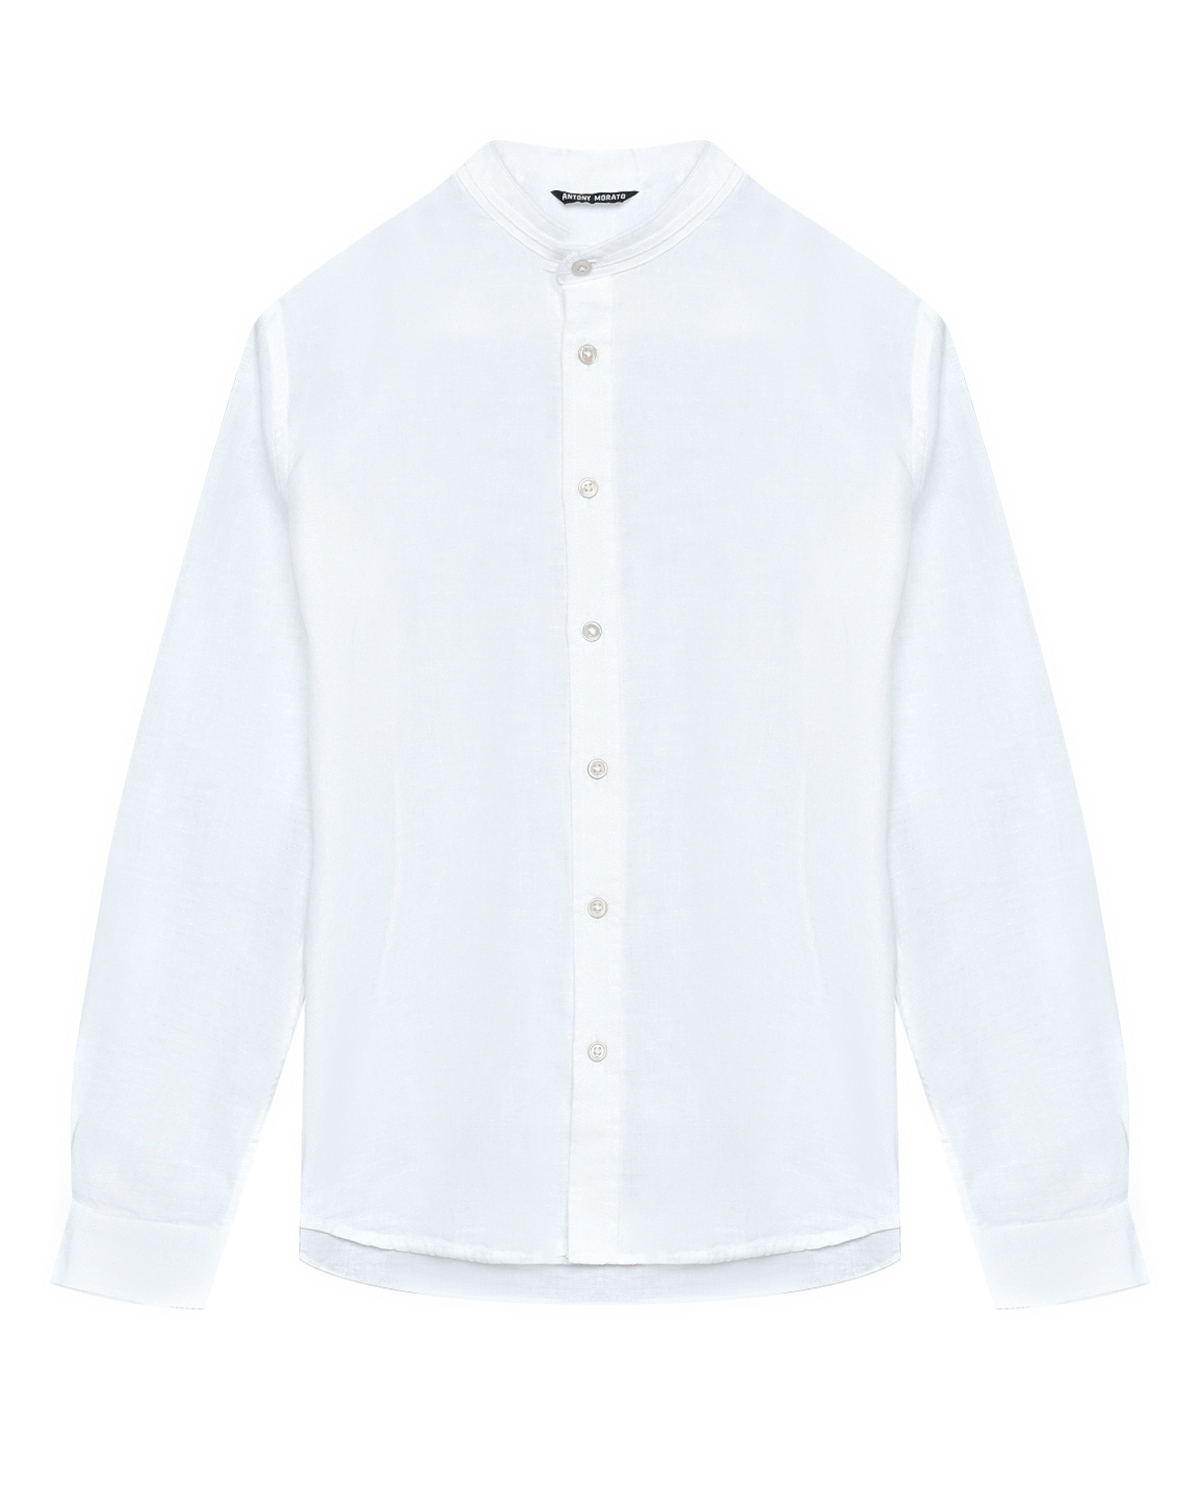 Рубашка белая льняная Antony Morato, размер 164, цвет нет цвета